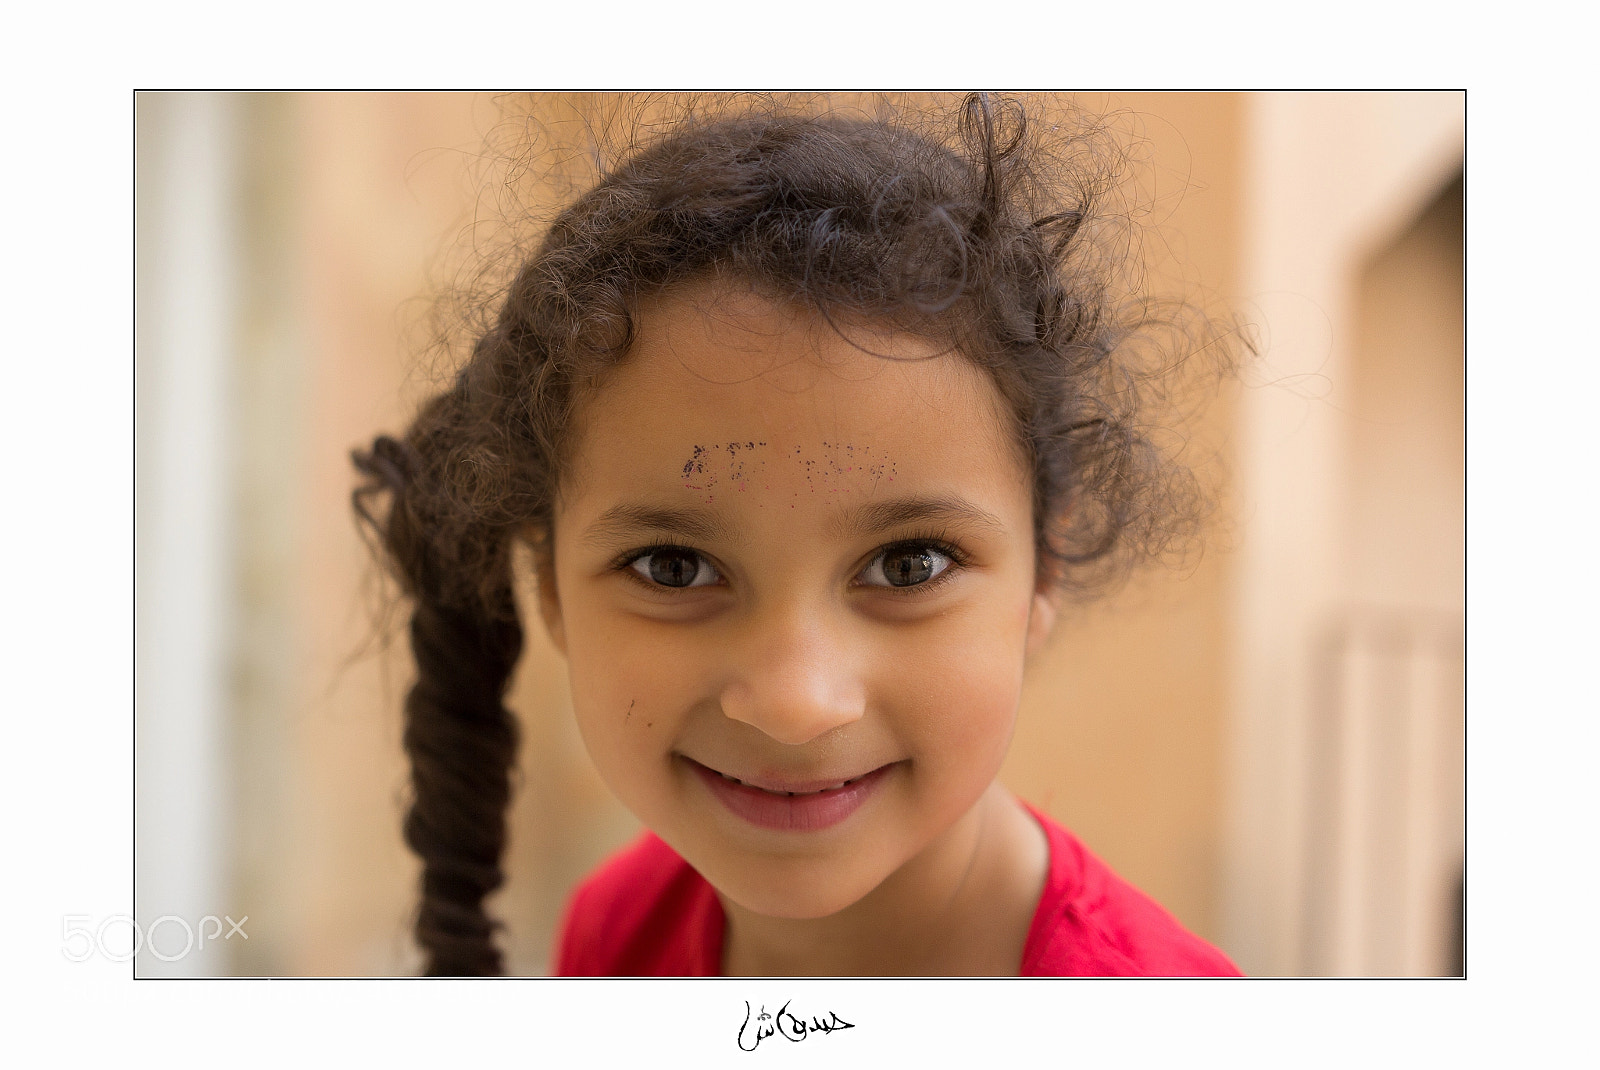 Canon EOS 60D sample photo. Portrait photography